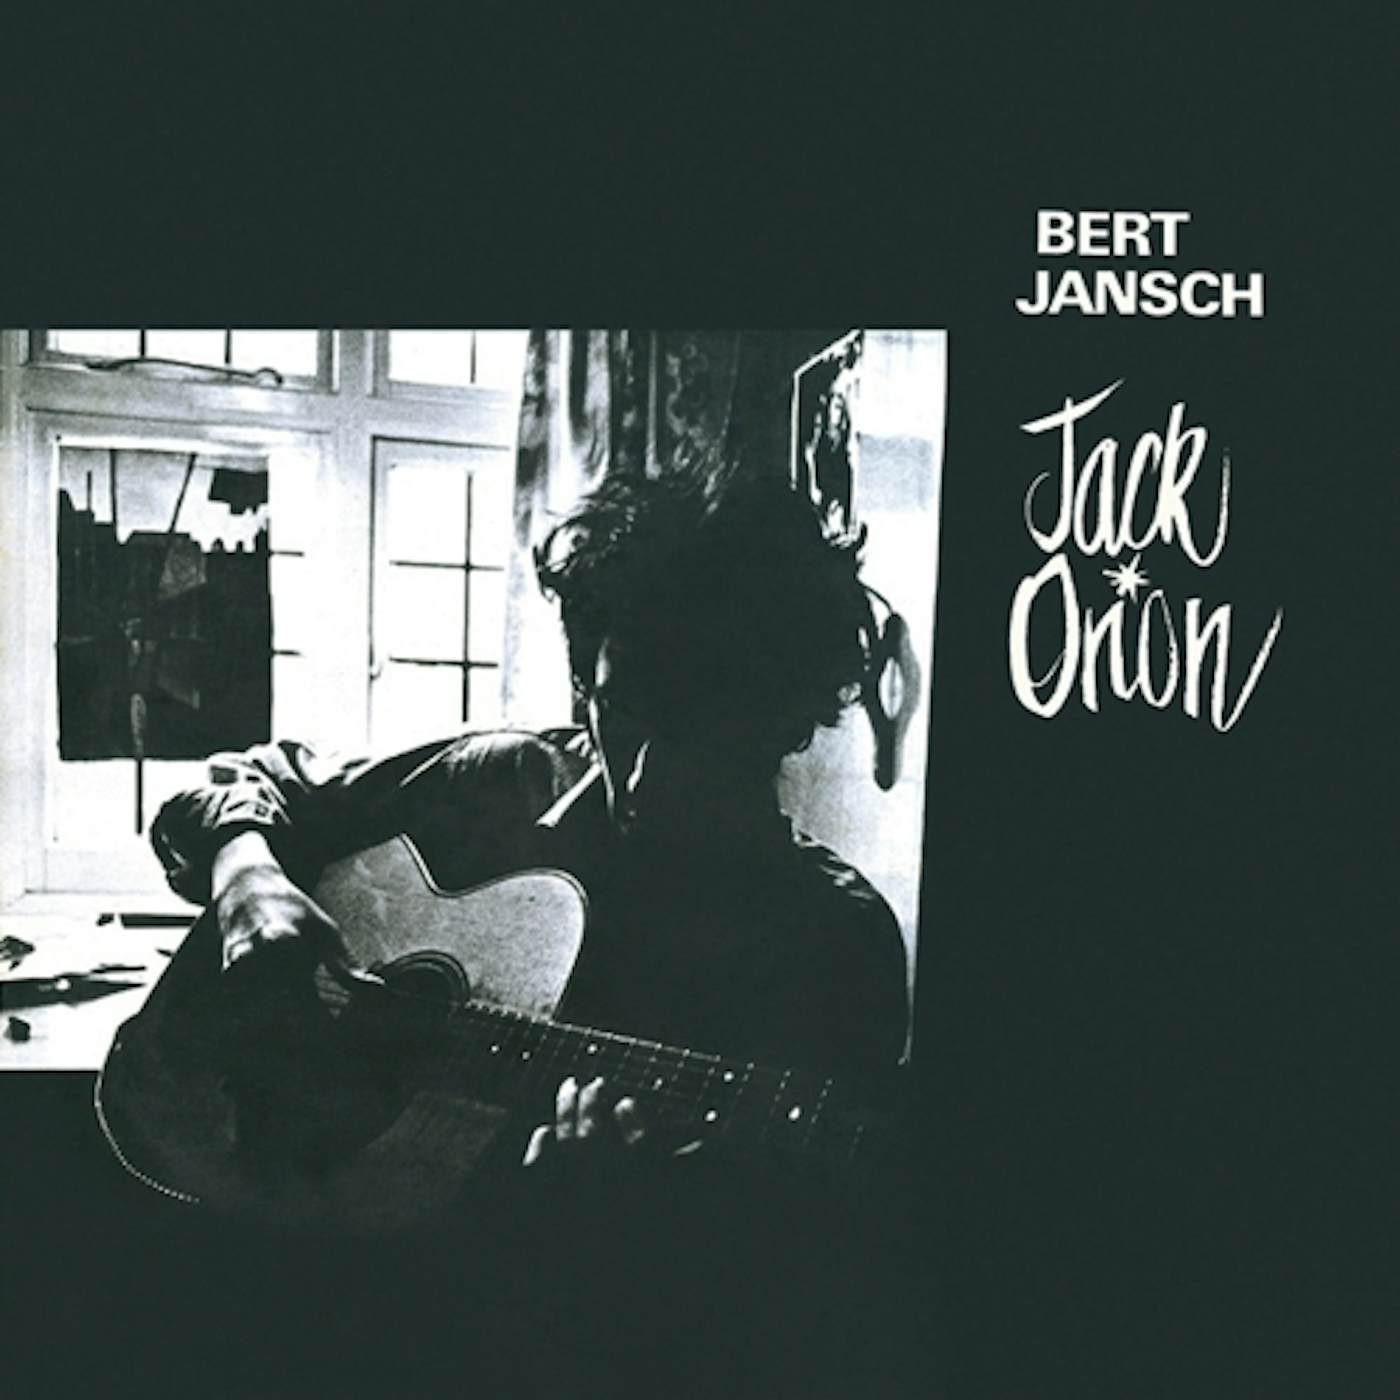 Bert Jansch Jack Orion Vinyl Record